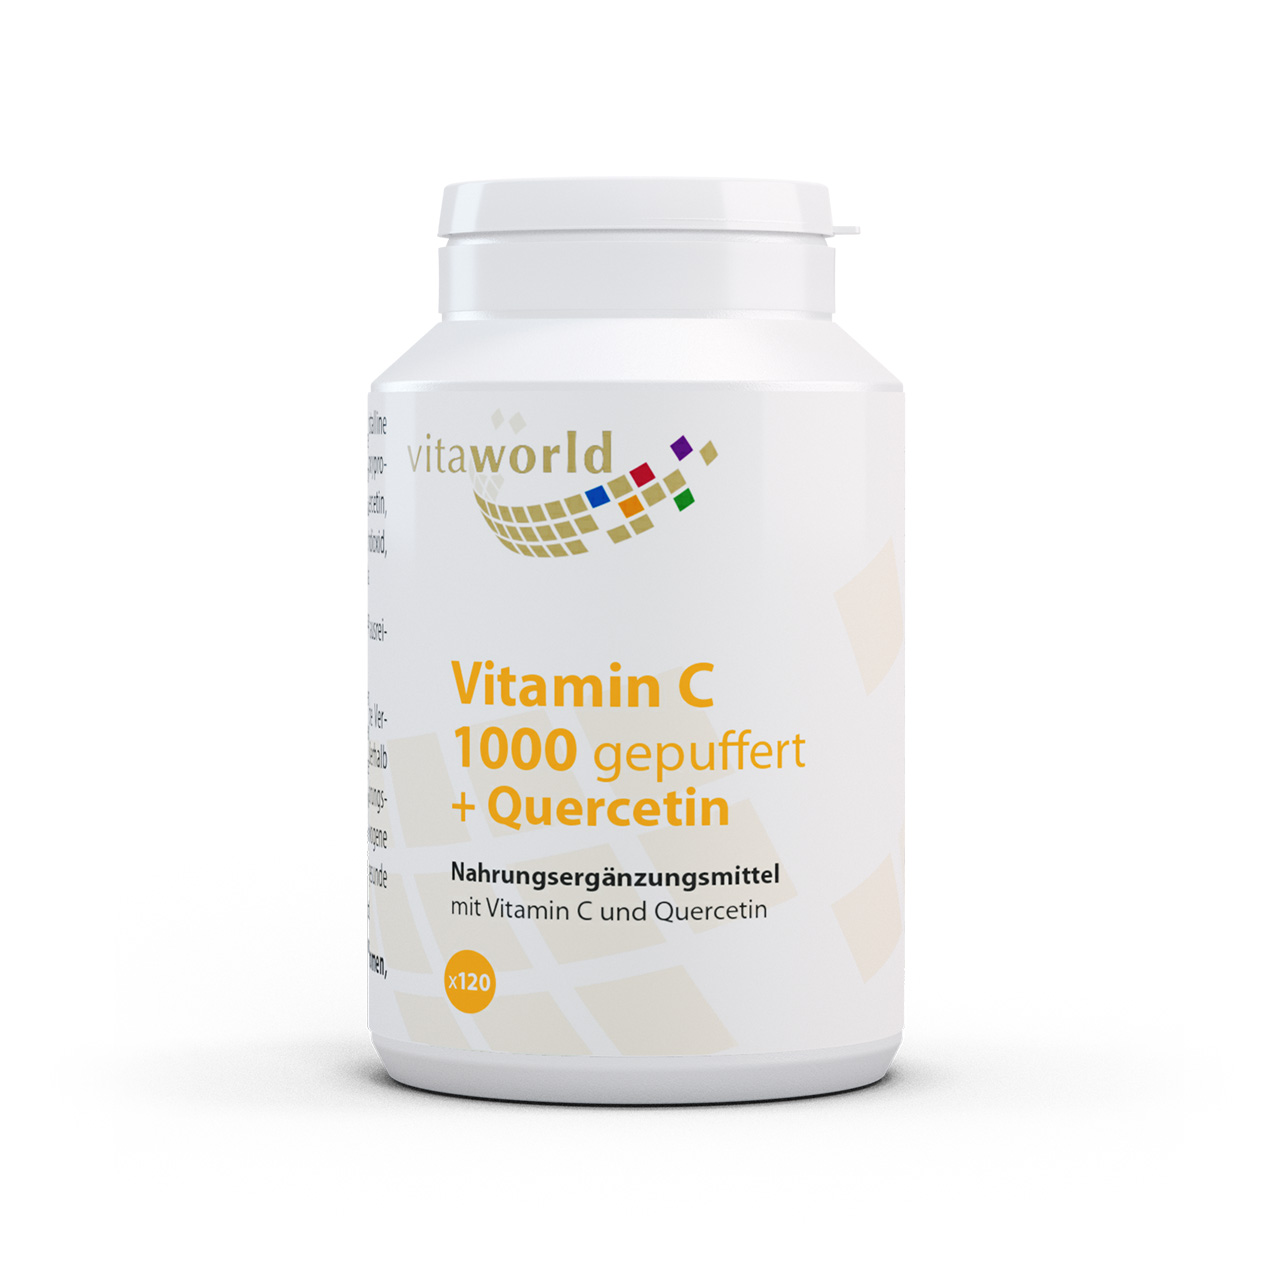 Vita World Vitamin C | 1000 gepuffert + Quercetin | 120 Tabletten - Sanfte Unterstützung für Immunsystem & Antioxidation